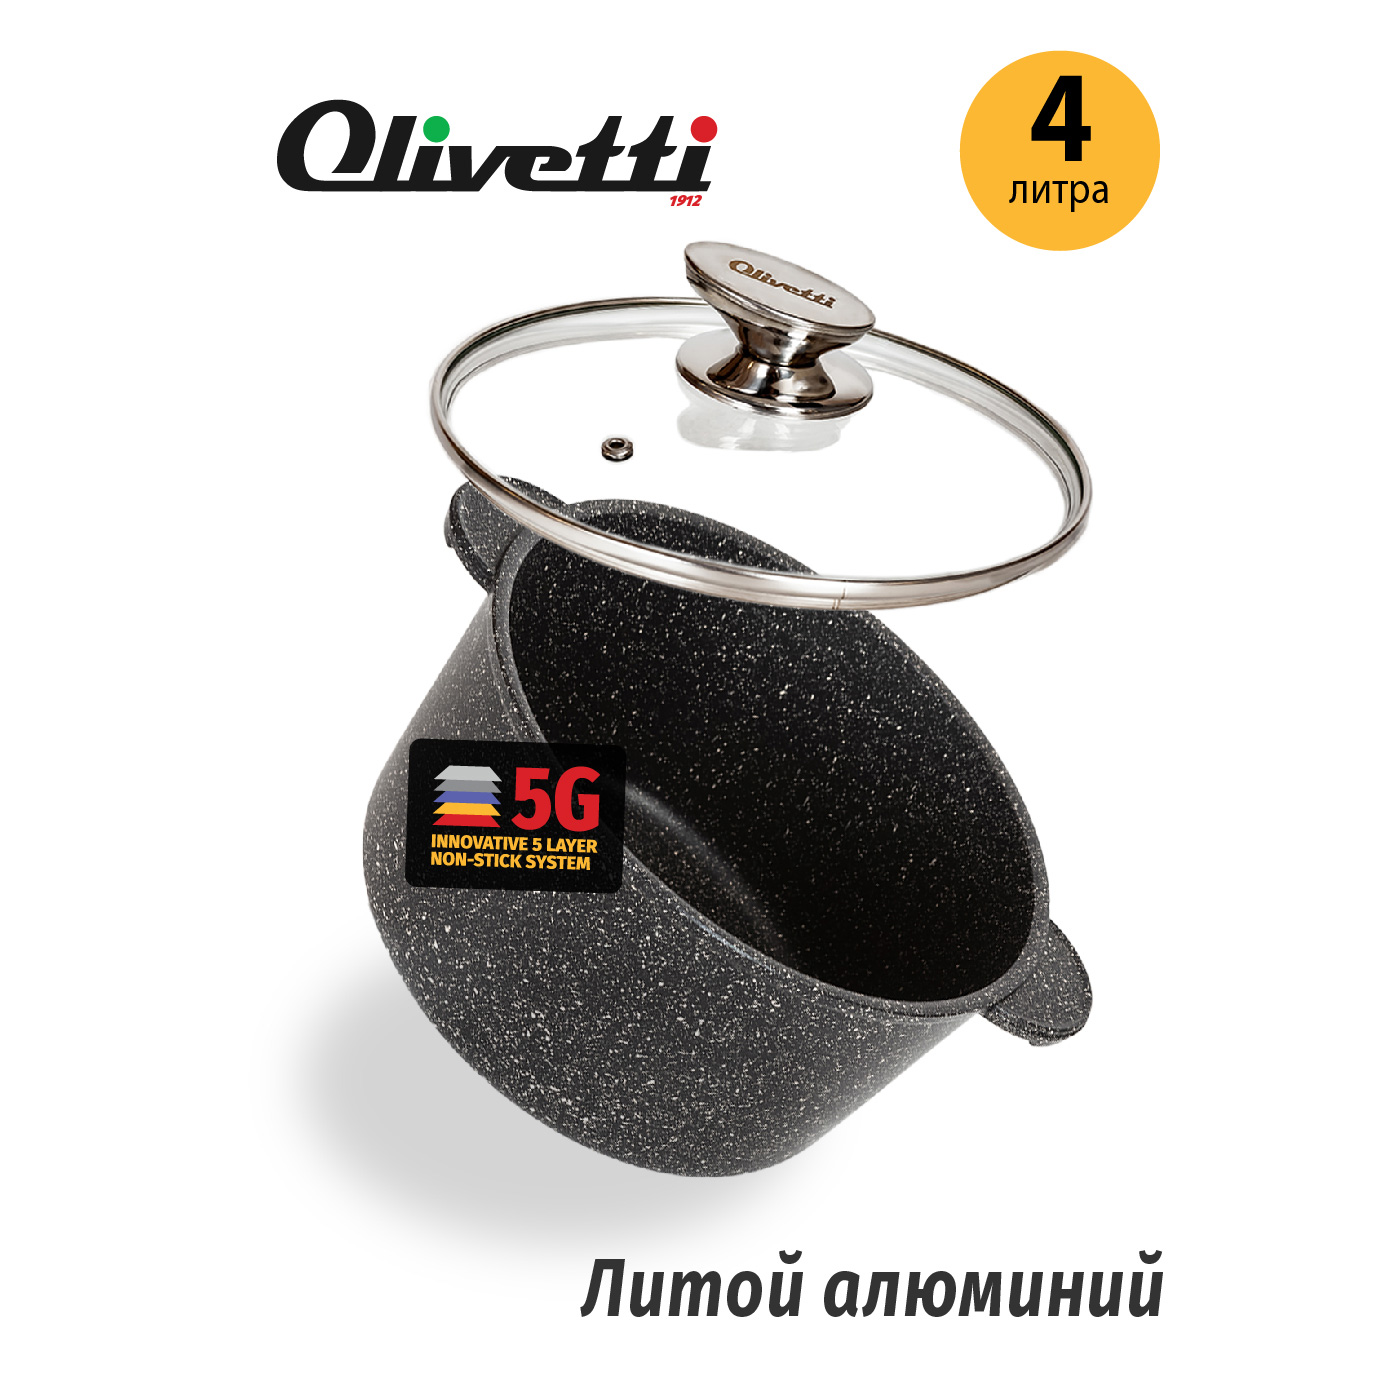 Картинка Алюминиевая кастрюля Olivetti CS724 22 см/4 л по разумной цене купить в интернет магазине mall.su